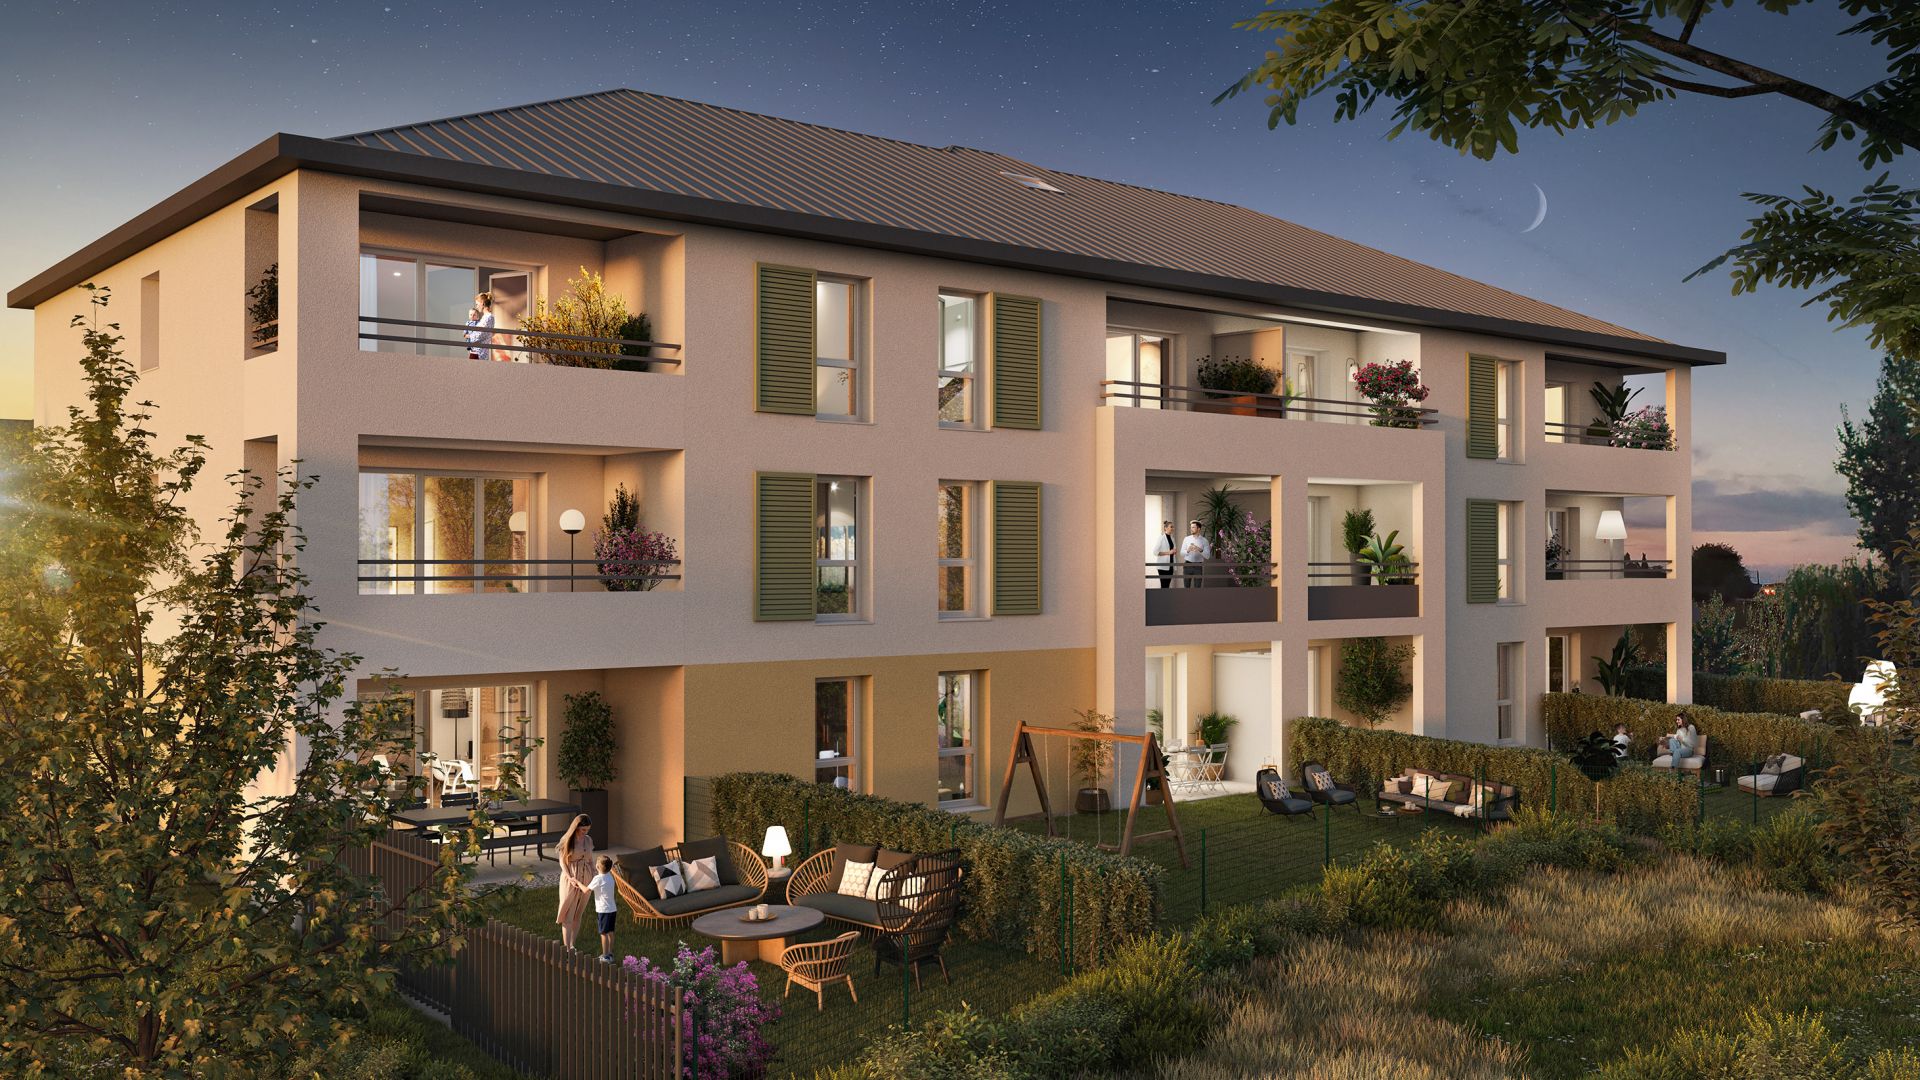 Greencity immobilier - achat appartements neufs du T2 au T3 - Résidence Le Madaillan - 60160 Montataire  